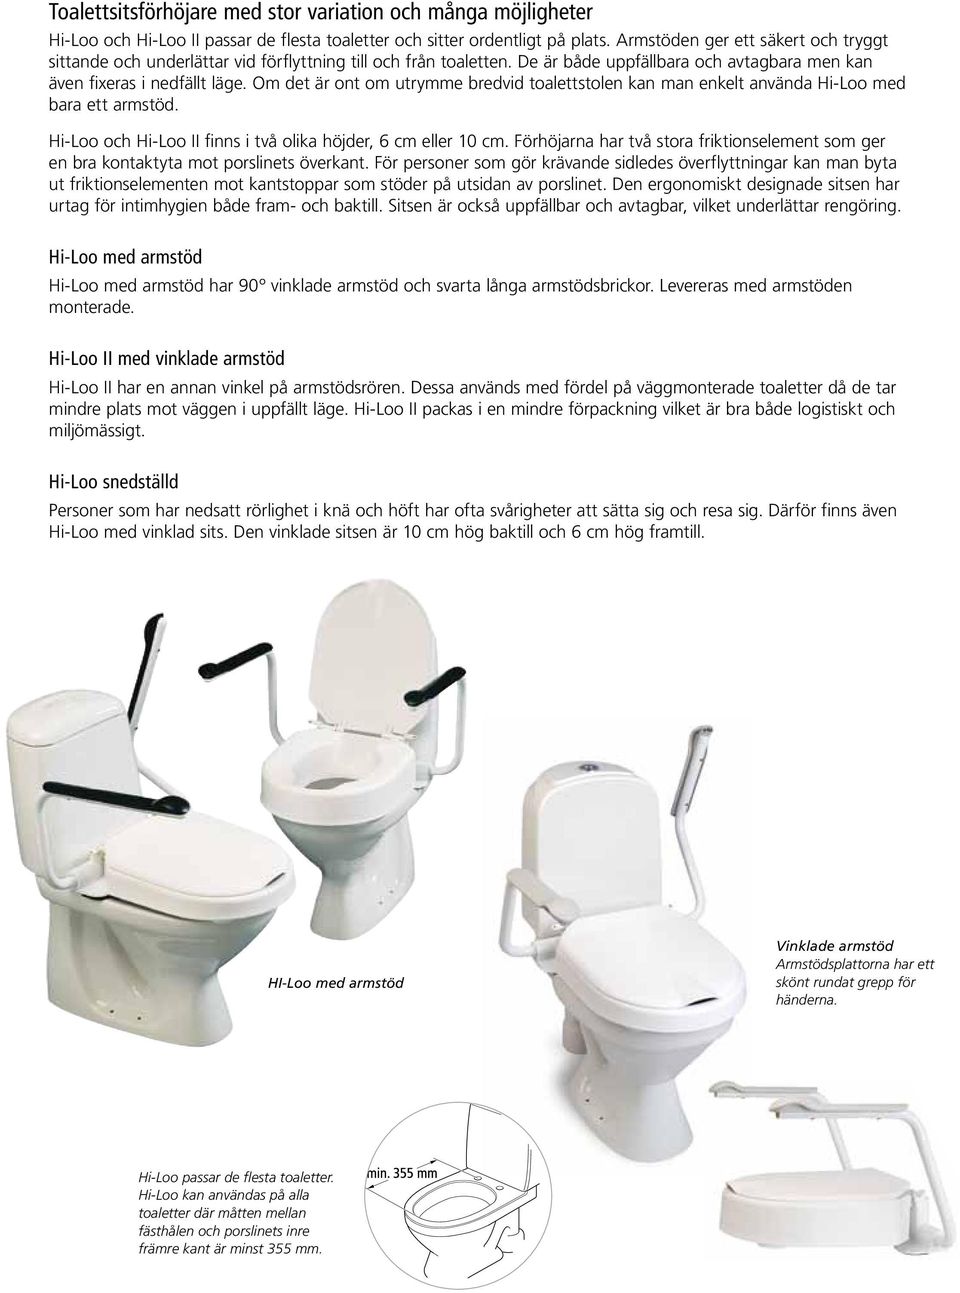 Om det är ont om utrymme bredvid toalettstolen kan man enkelt använda Hi-Loo med bara ett armstöd. Hi-Loo och Hi-Loo II finns i två olika höjder, 6 cm eller 10 cm.